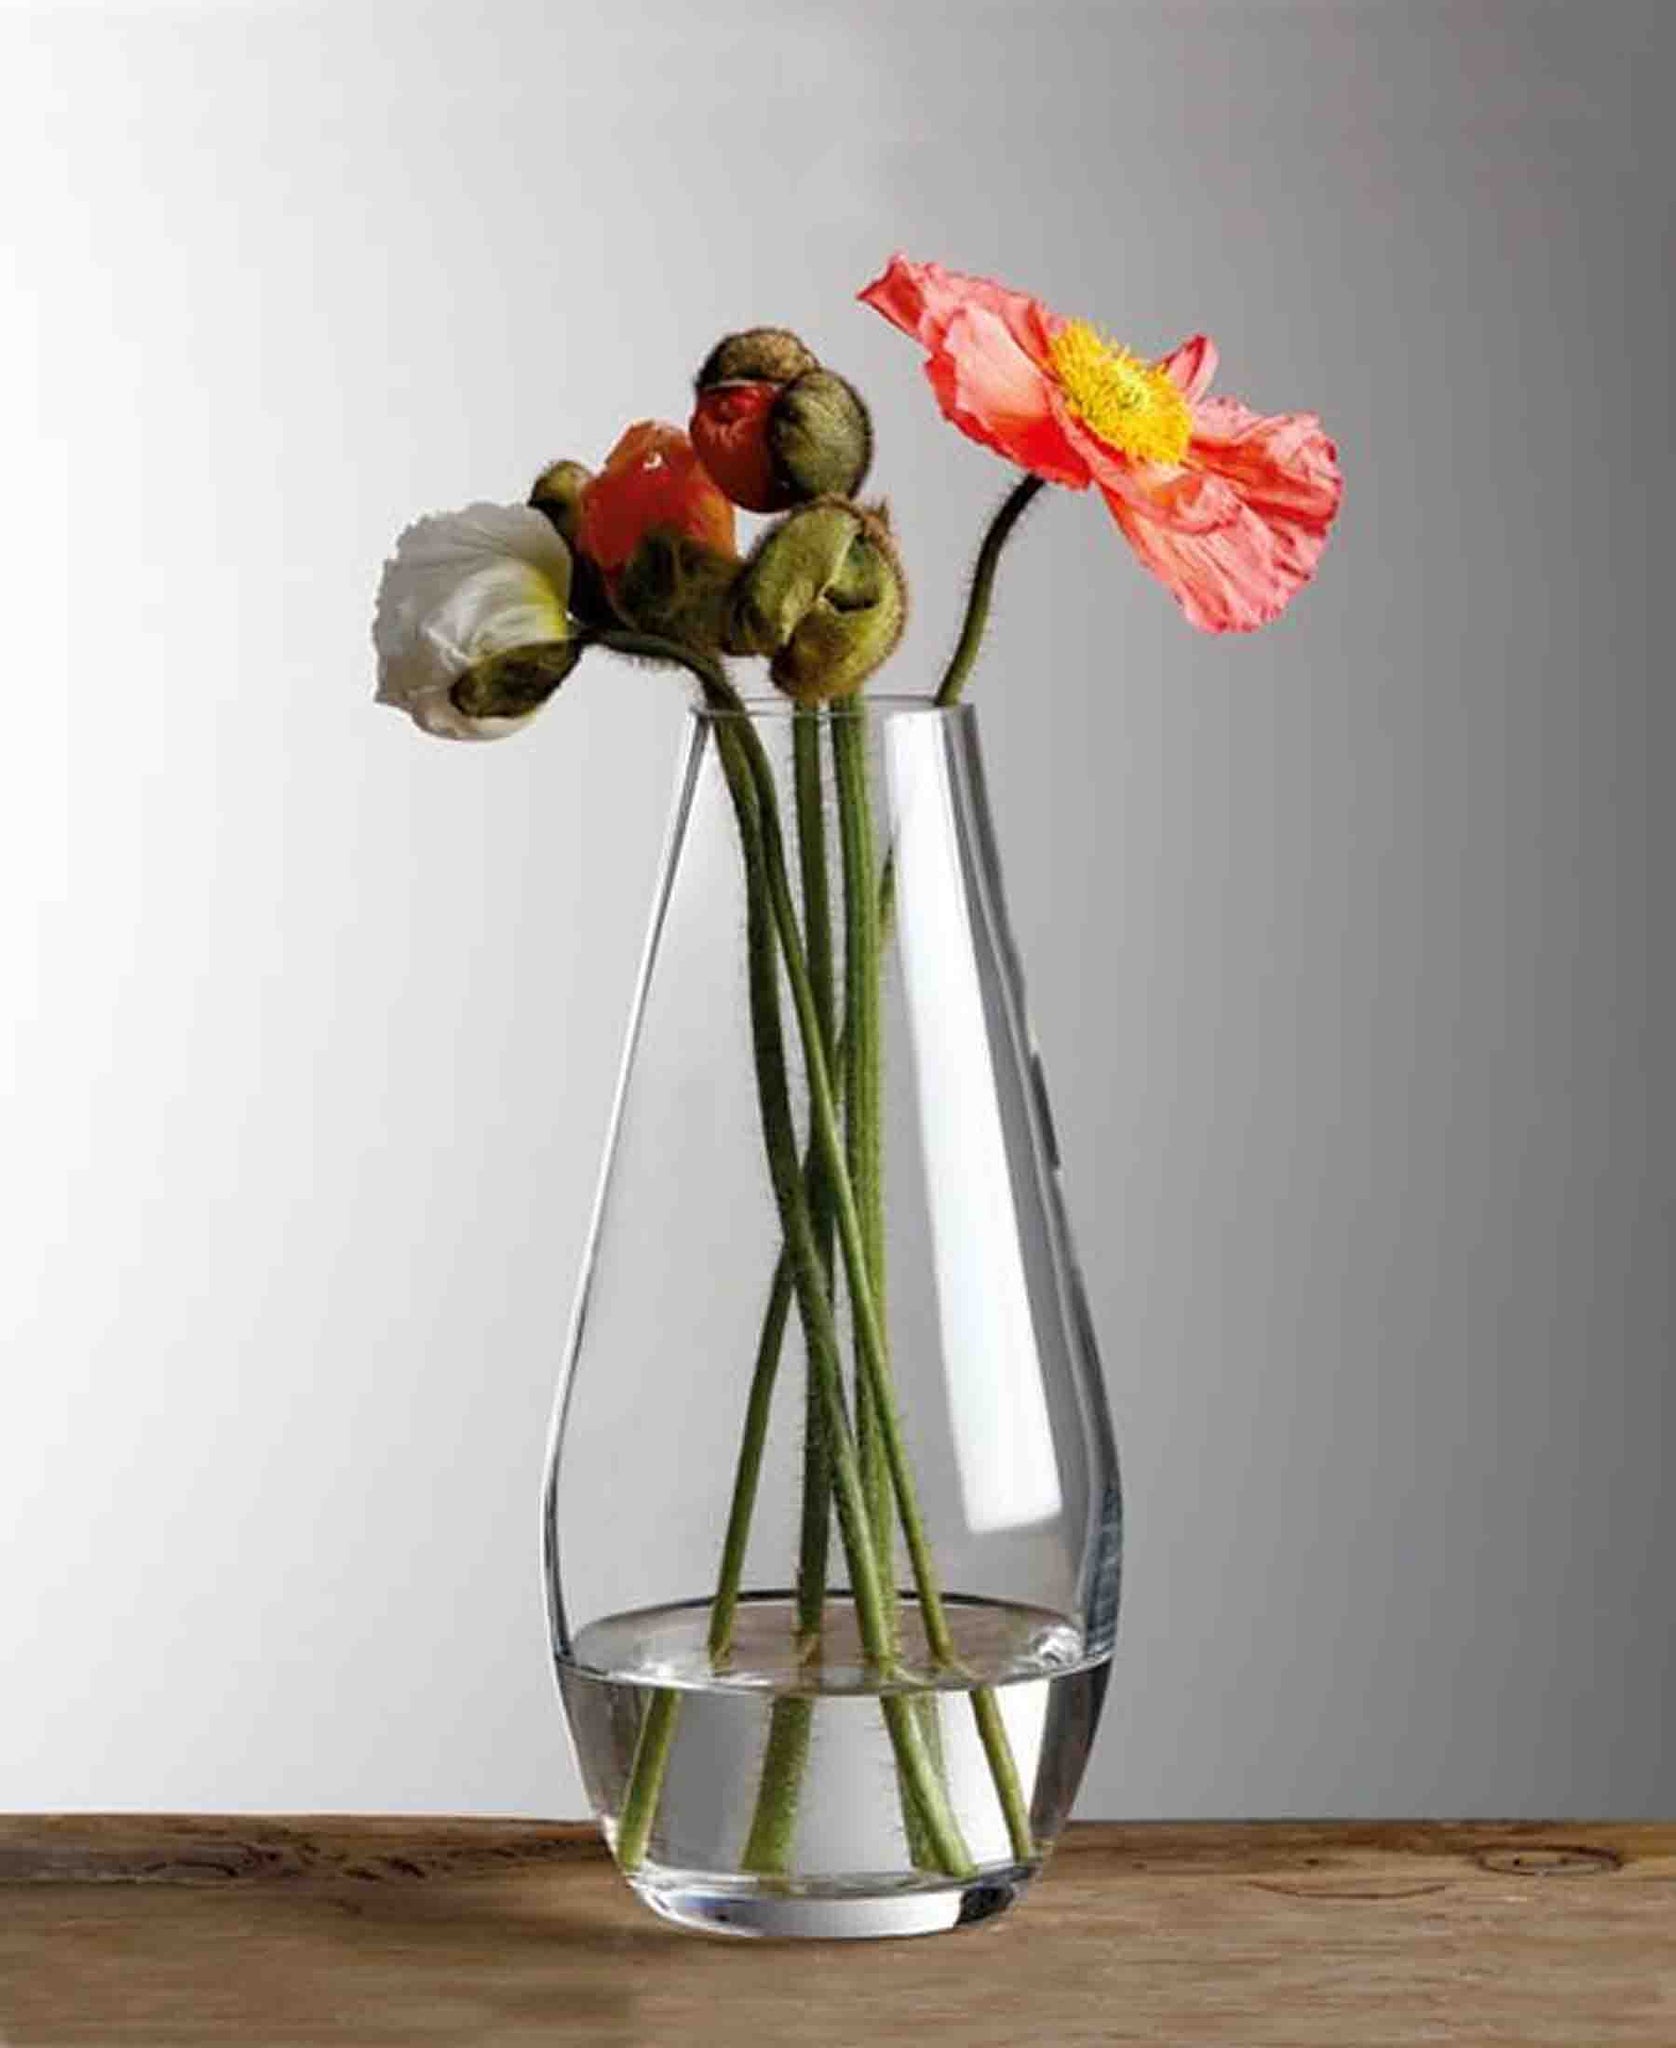 Diamante Teardrop Vase 25cm - Clear